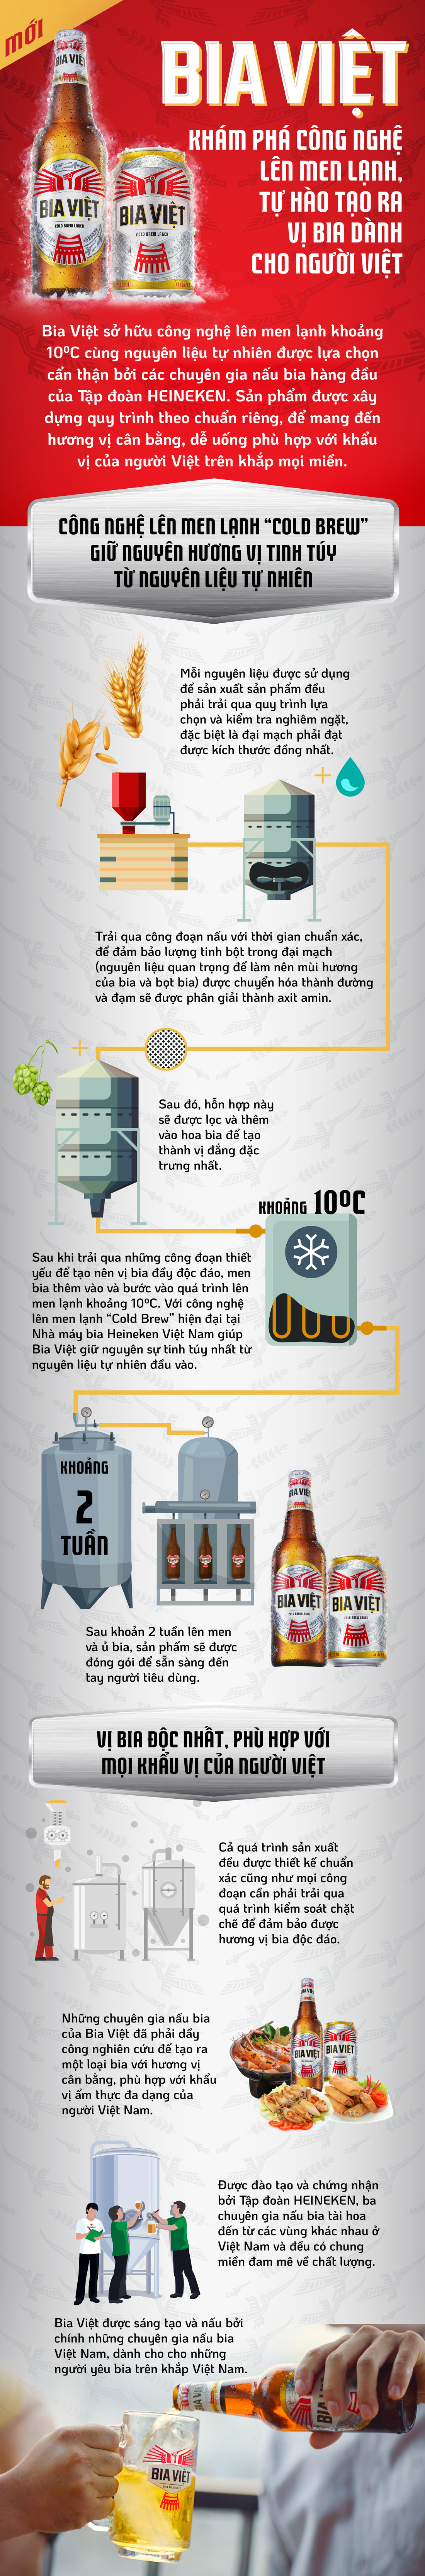 Khám phá công nghệ lên men lạnh, tạo ra vị bia dành cho người Việt - Ảnh 1.